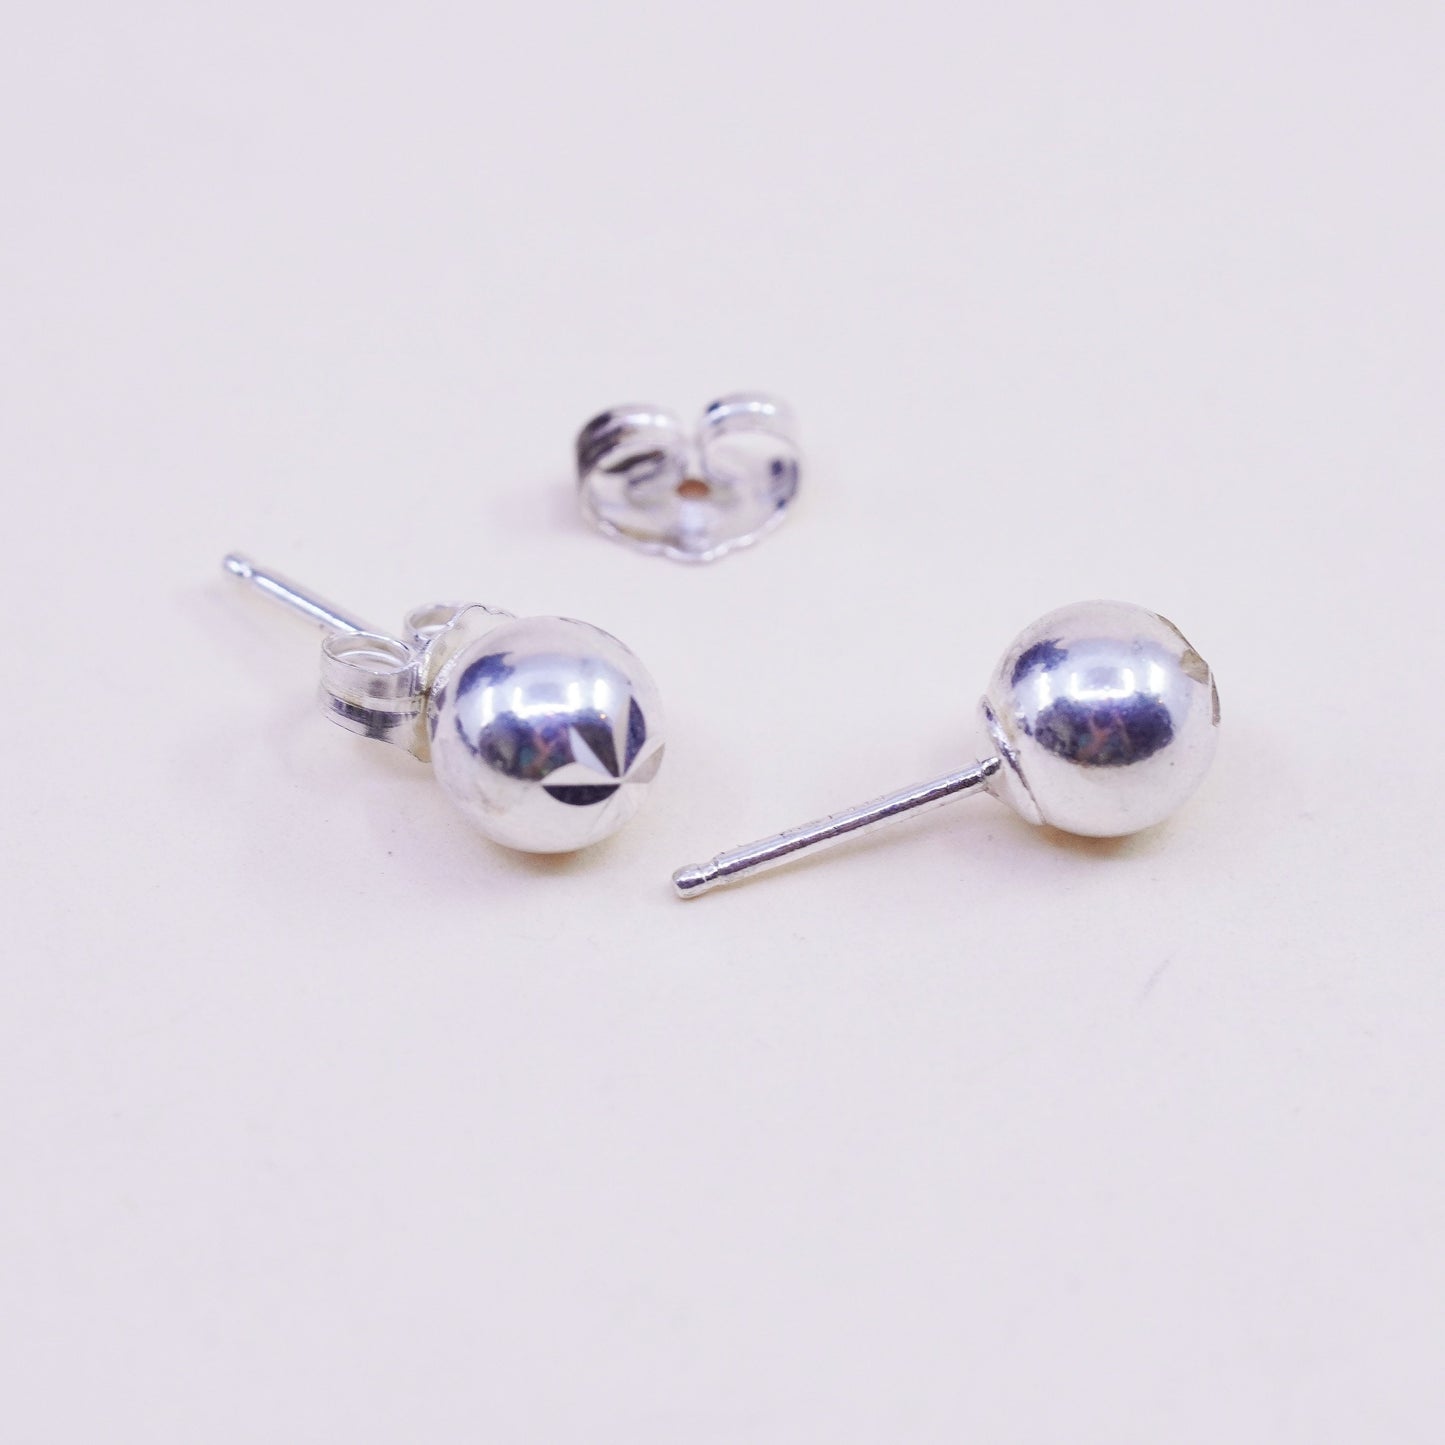 5mm, Vintage sterling silver sphere studs, handmade 925 earrings with star